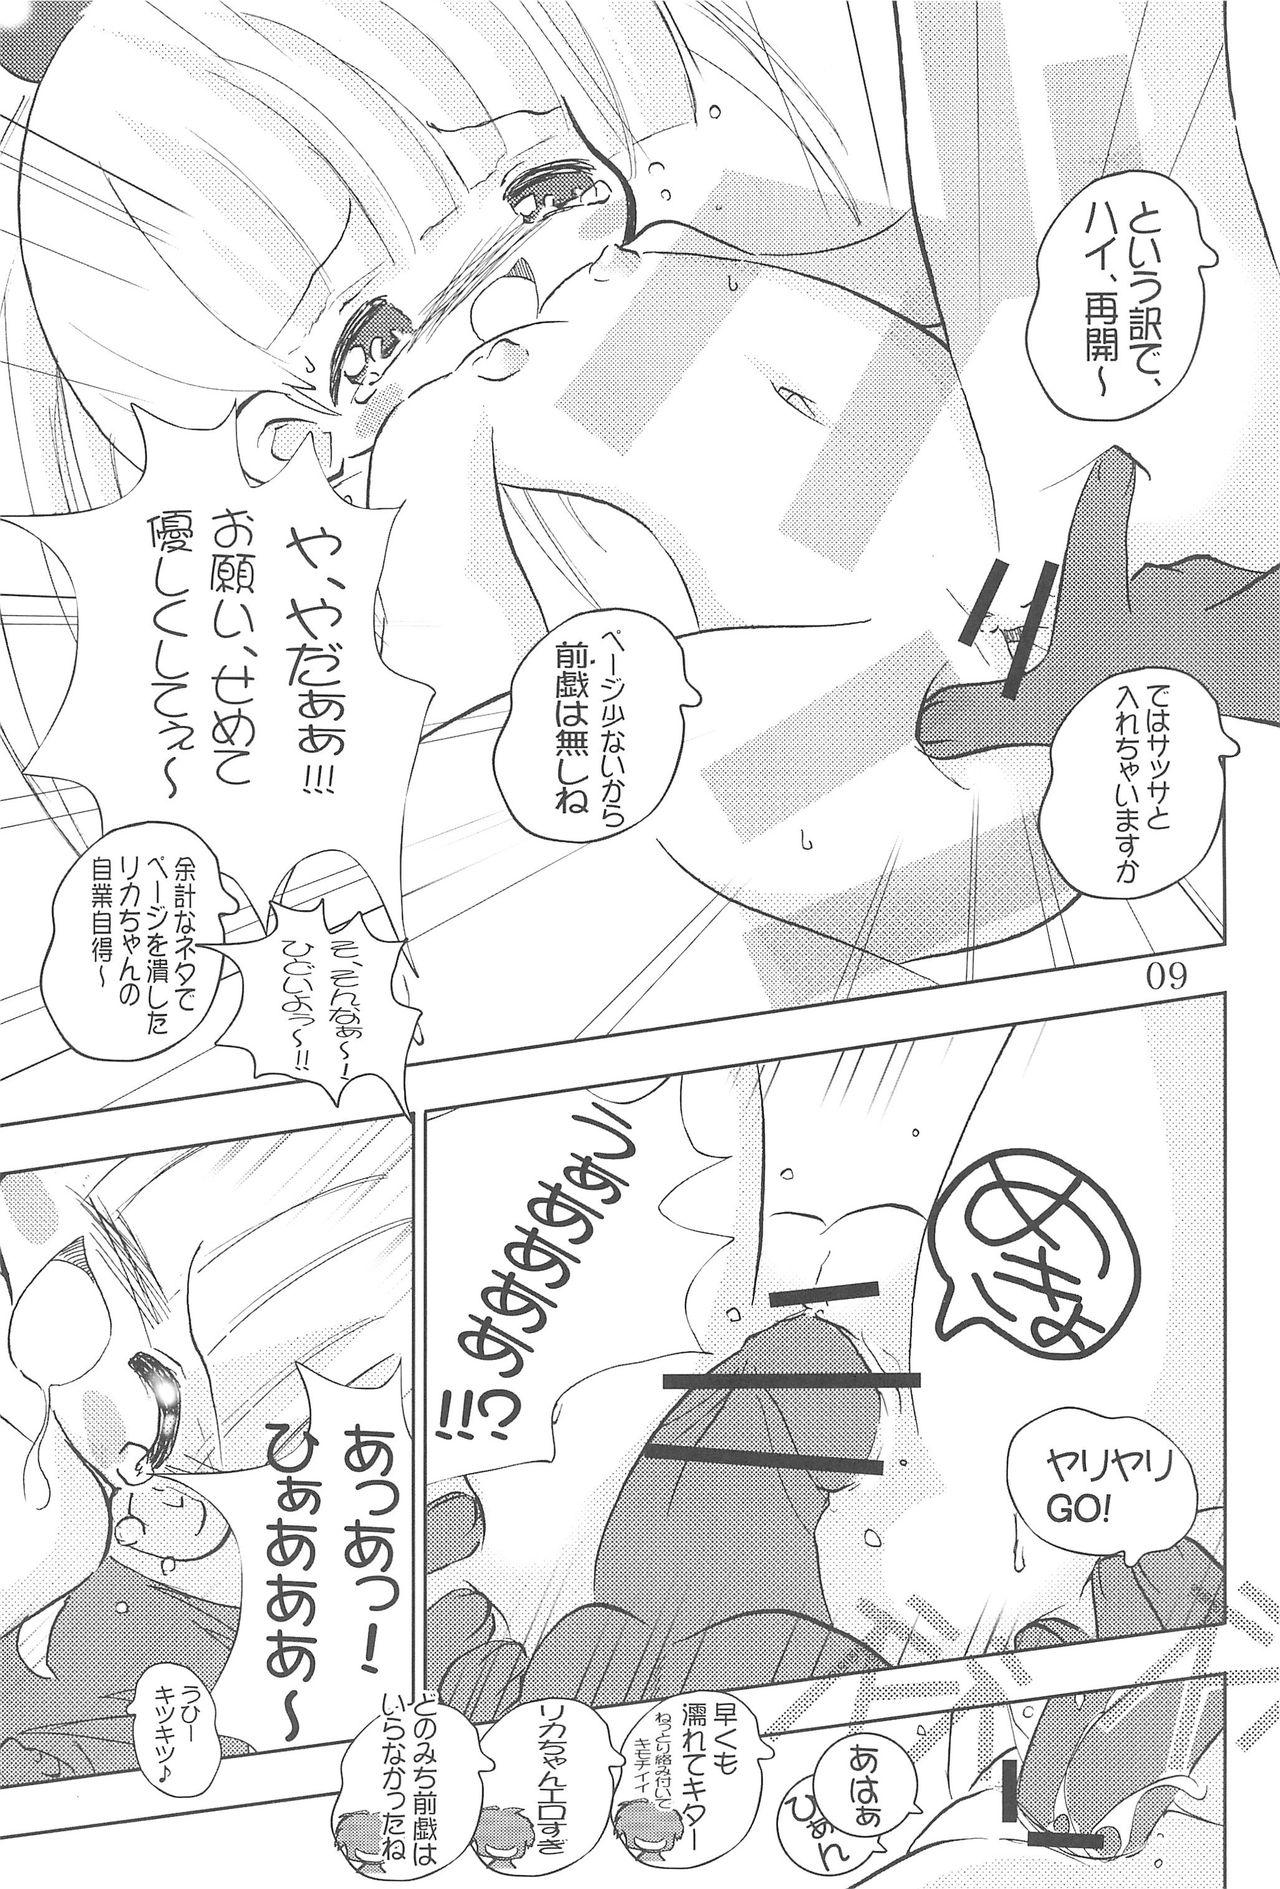 Calcinha WataRika - Shuukan watashi no onii-chan Licca vignette Enema - Page 11